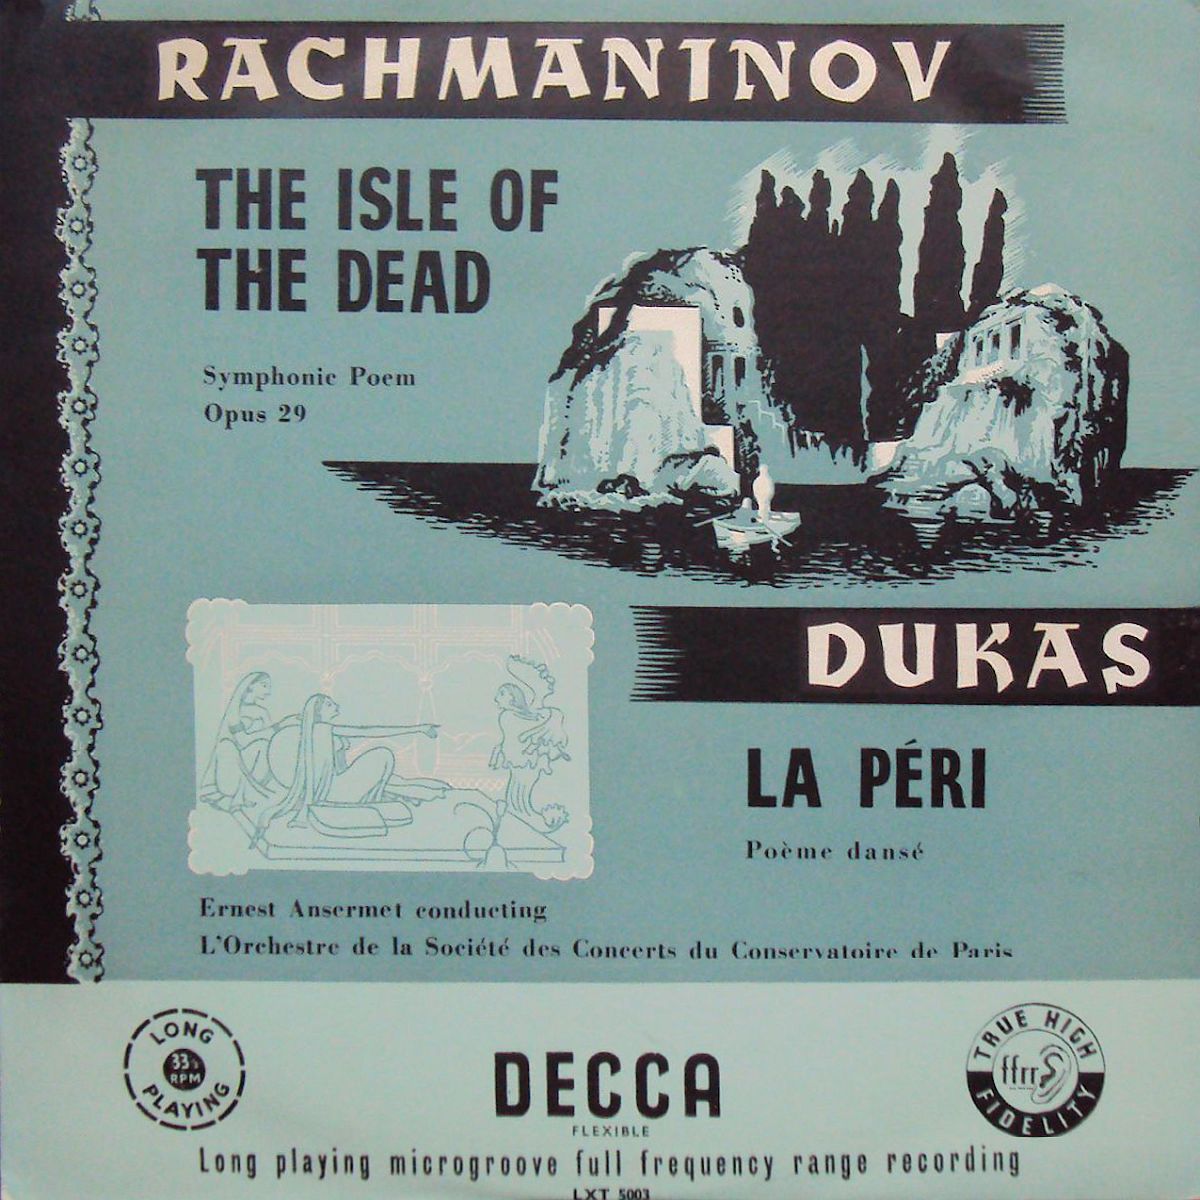 Recto pochette Decca LXT 5003, l'une des éditions de l'enregistrement proposé sur cette page, cliquer pour une vue agrandie